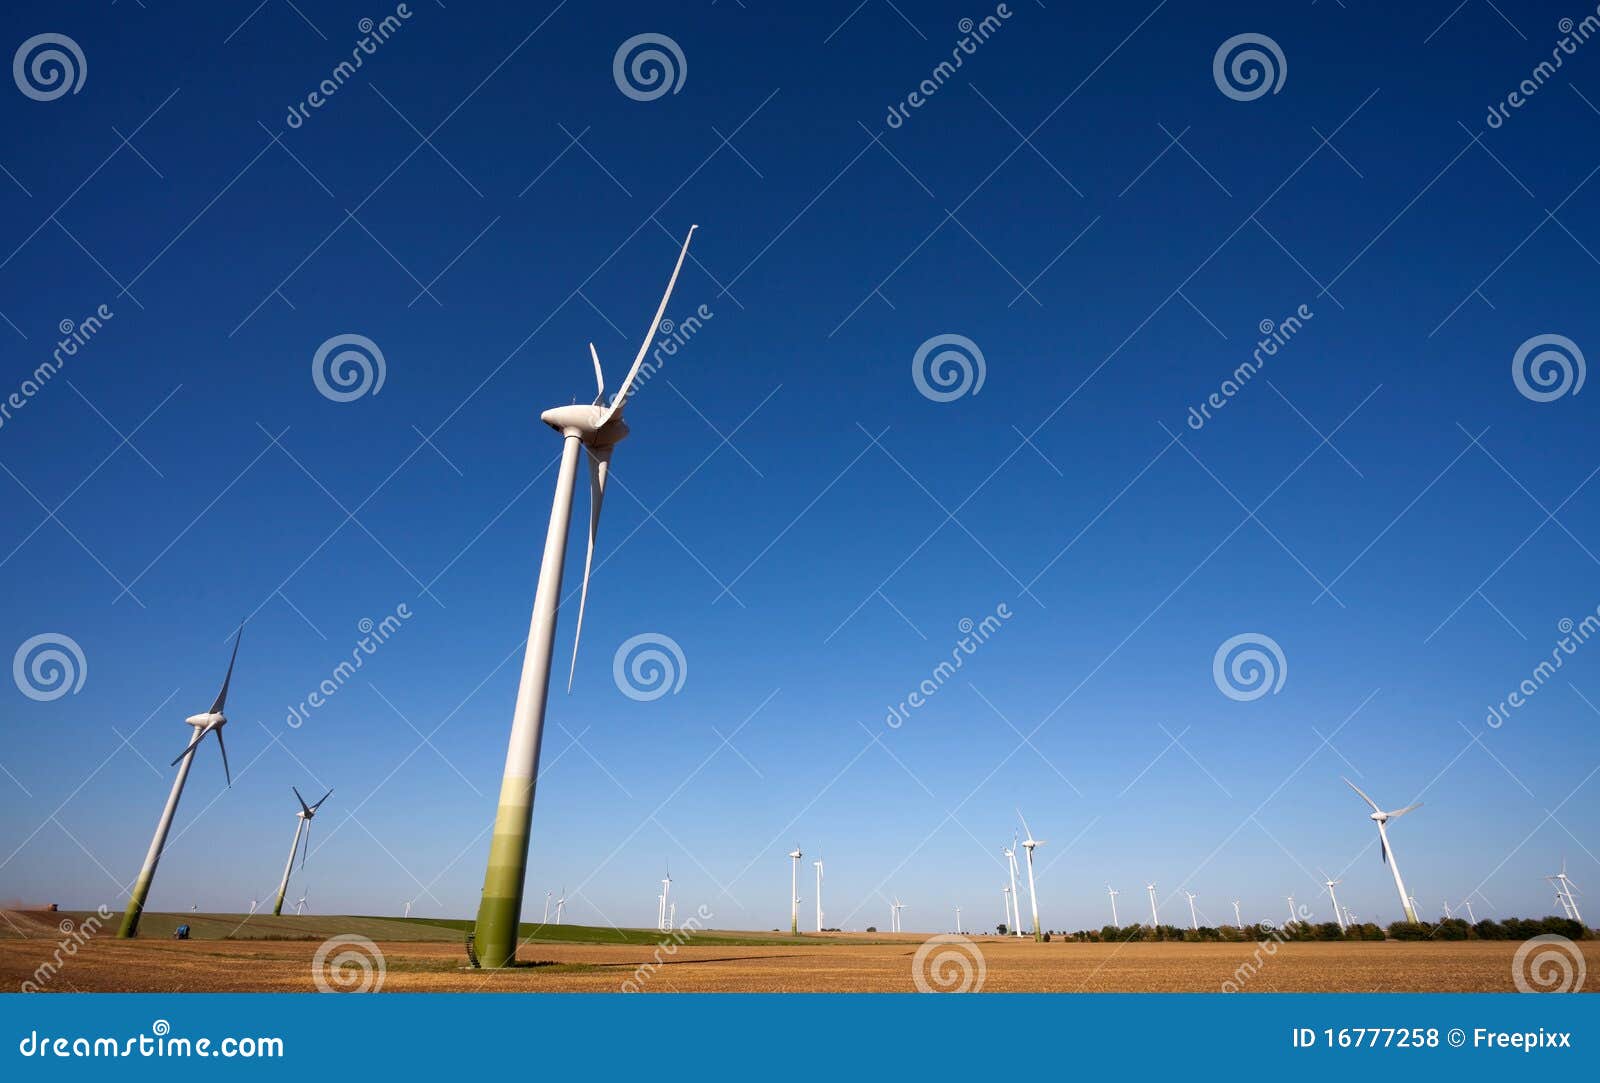 windpower green technology